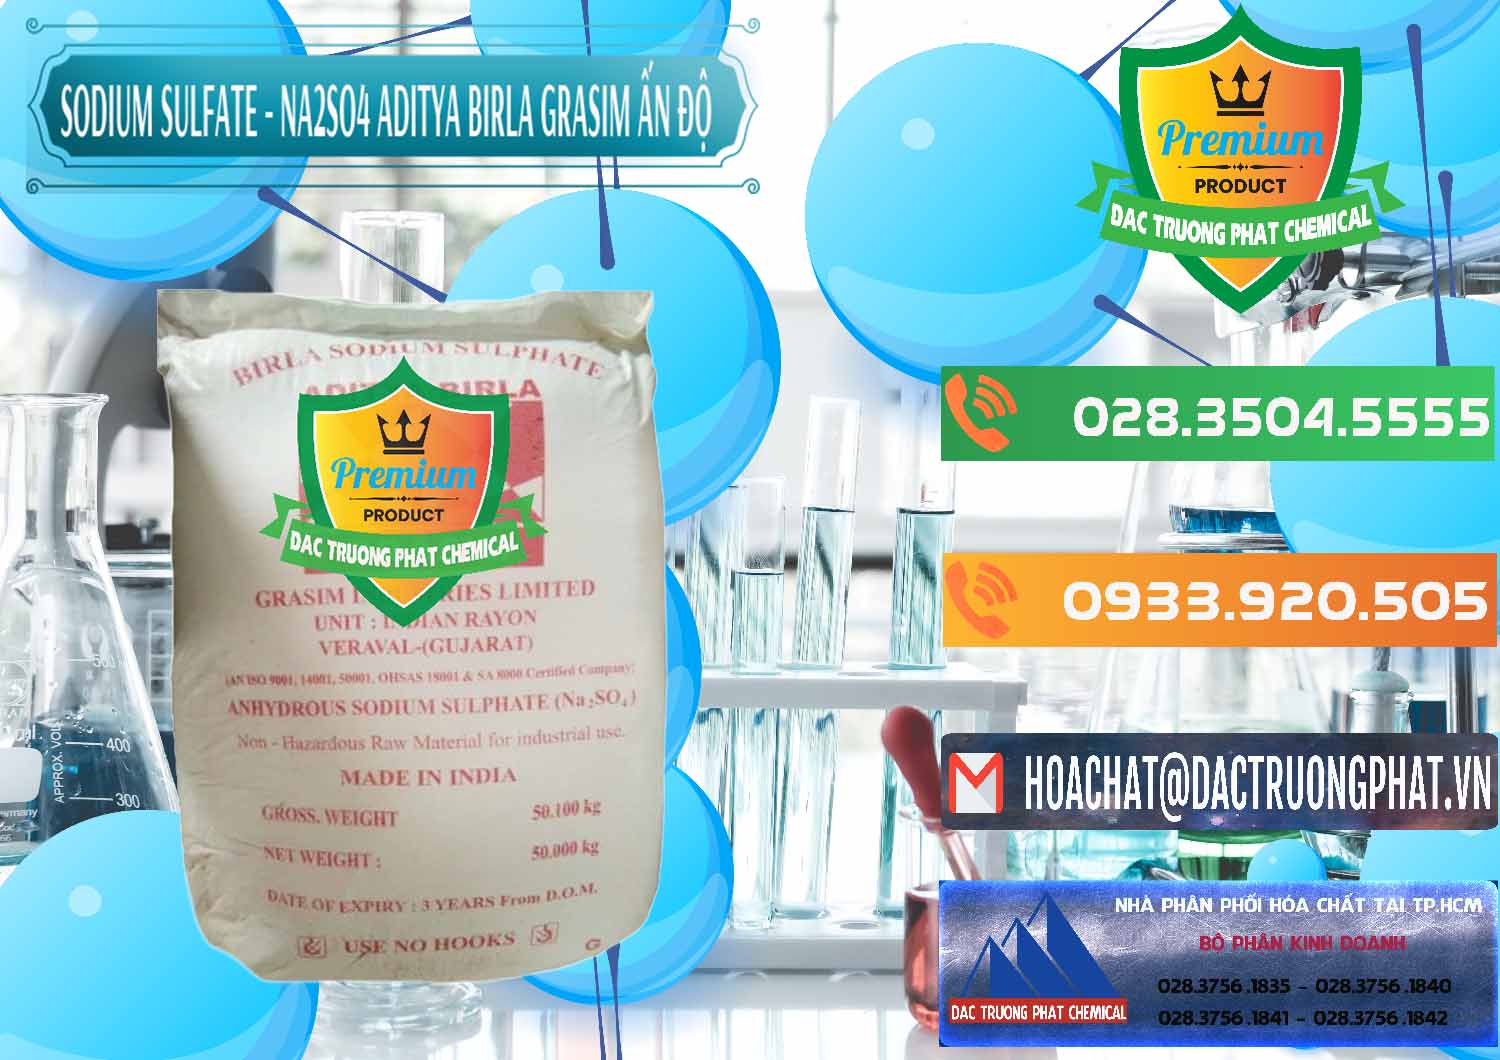 Nơi chuyên bán _ cung ứng Sodium Sulphate - Muối Sunfat Na2SO4 Grasim Ấn Độ India - 0356 - Công ty cung ứng và phân phối hóa chất tại TP.HCM - hoachatxulynuoc.com.vn